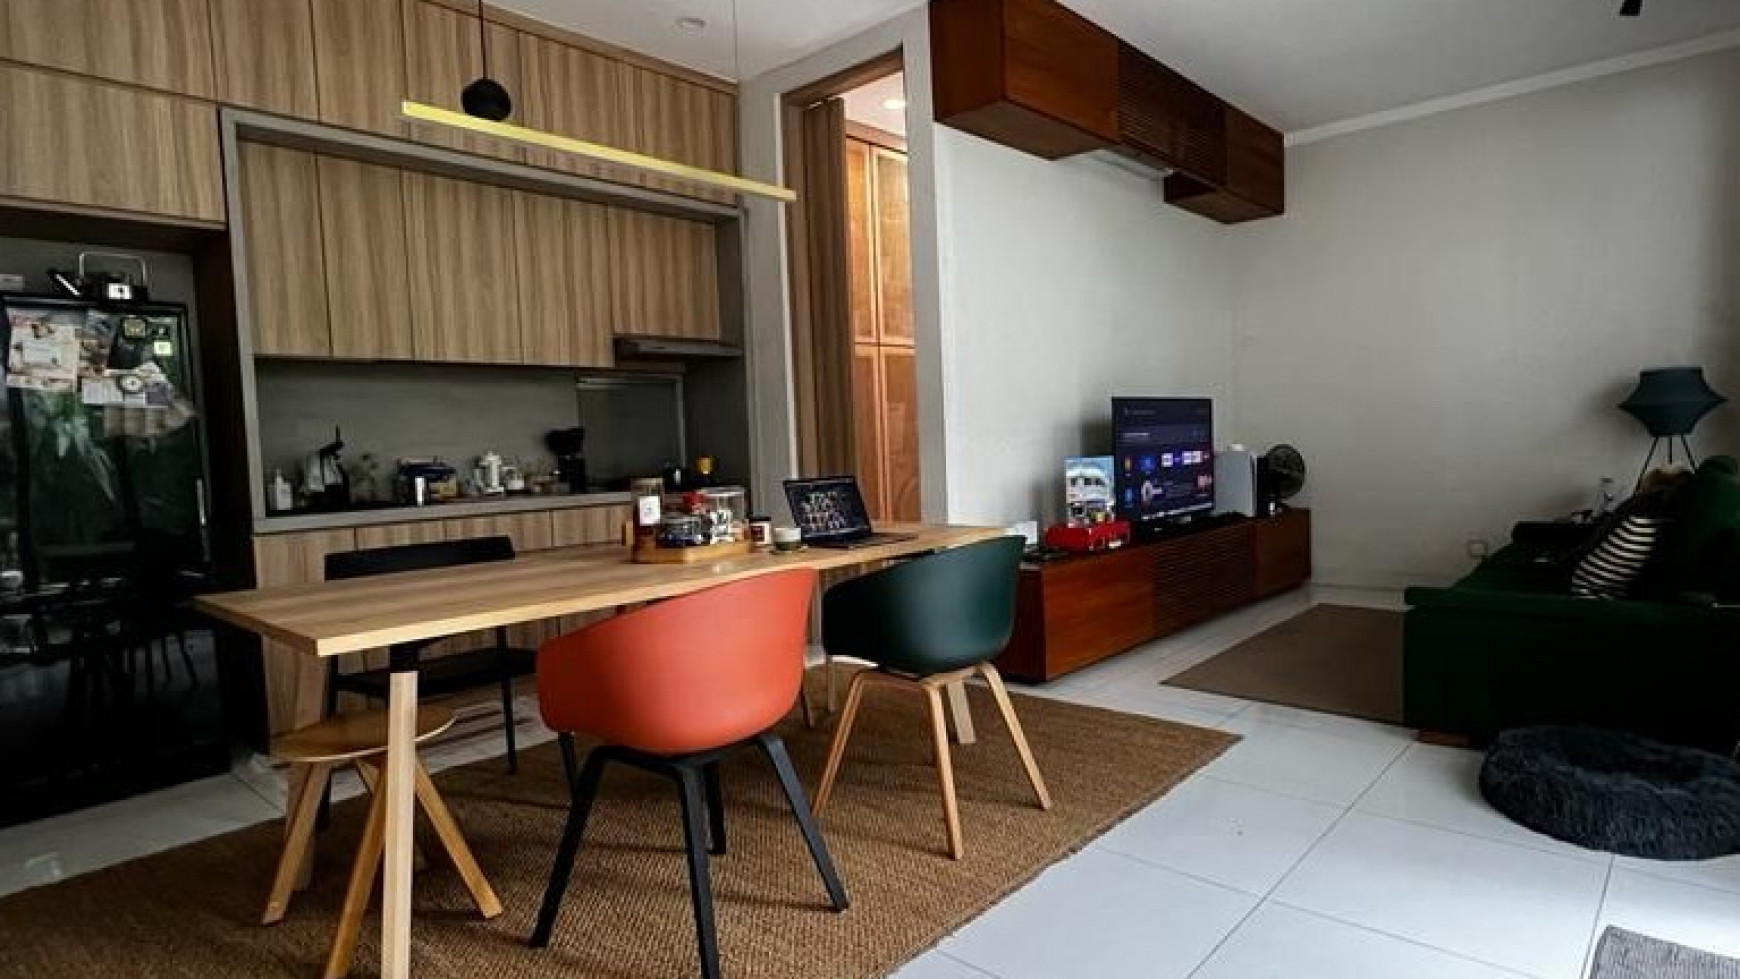 Rumah bagus minimalis siap huni, Bintaro Jaya *RWCG/2022/05/0011-JOH